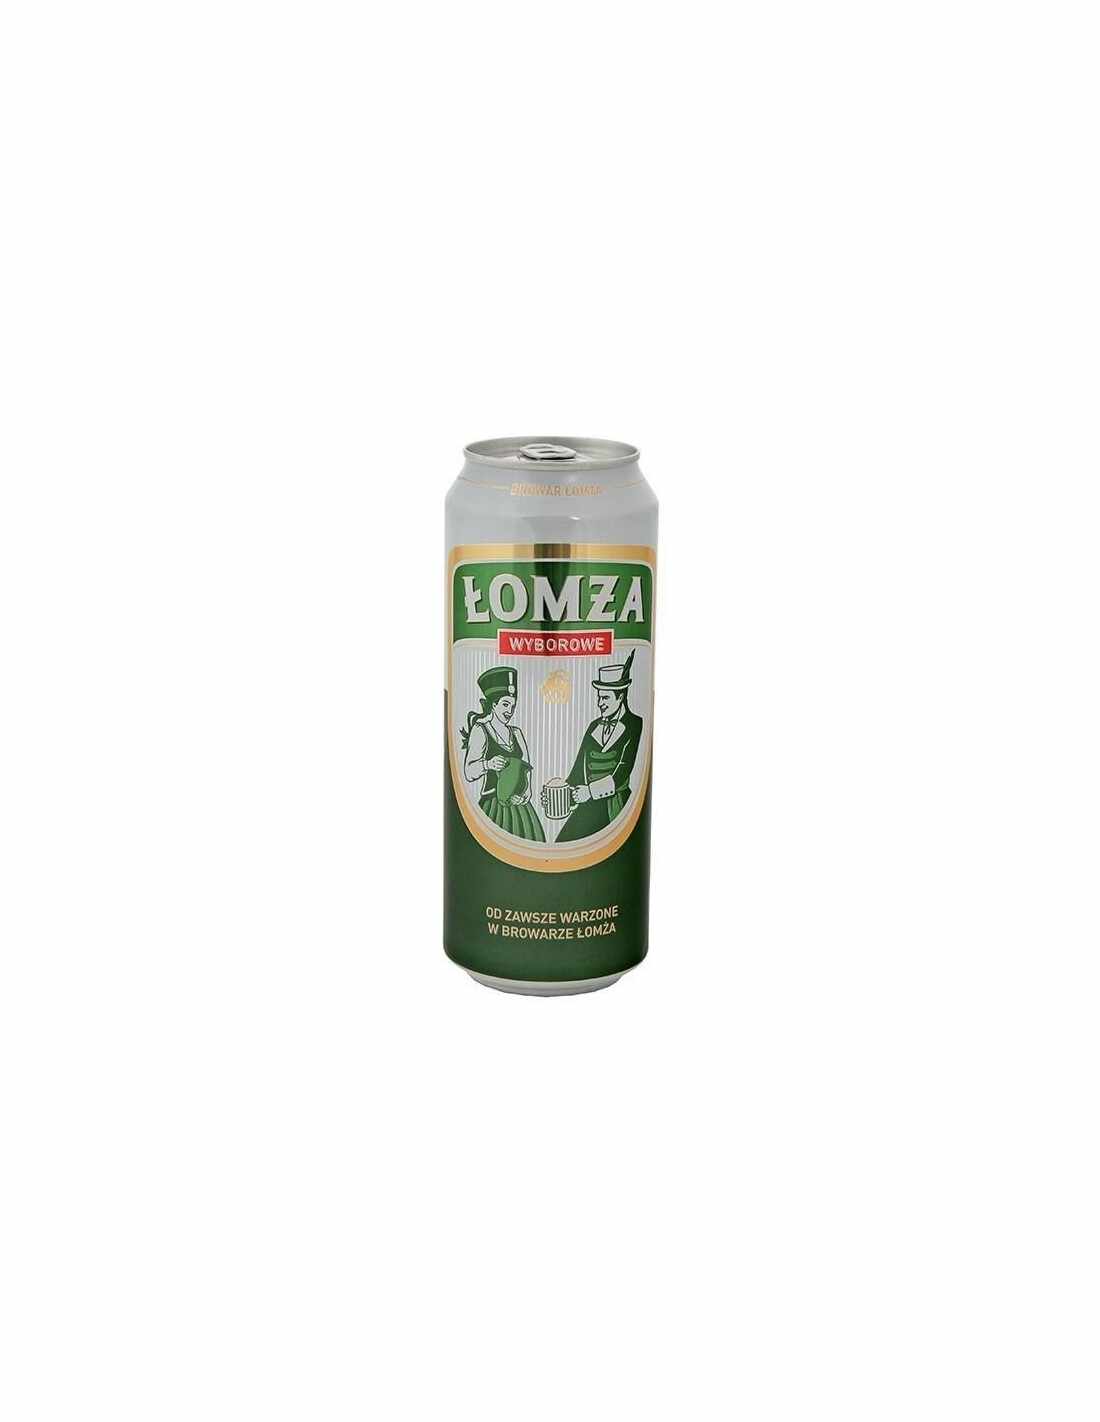 Bere blonda Lomza Wyborowe, 6% alc., 0.5L, Polonia